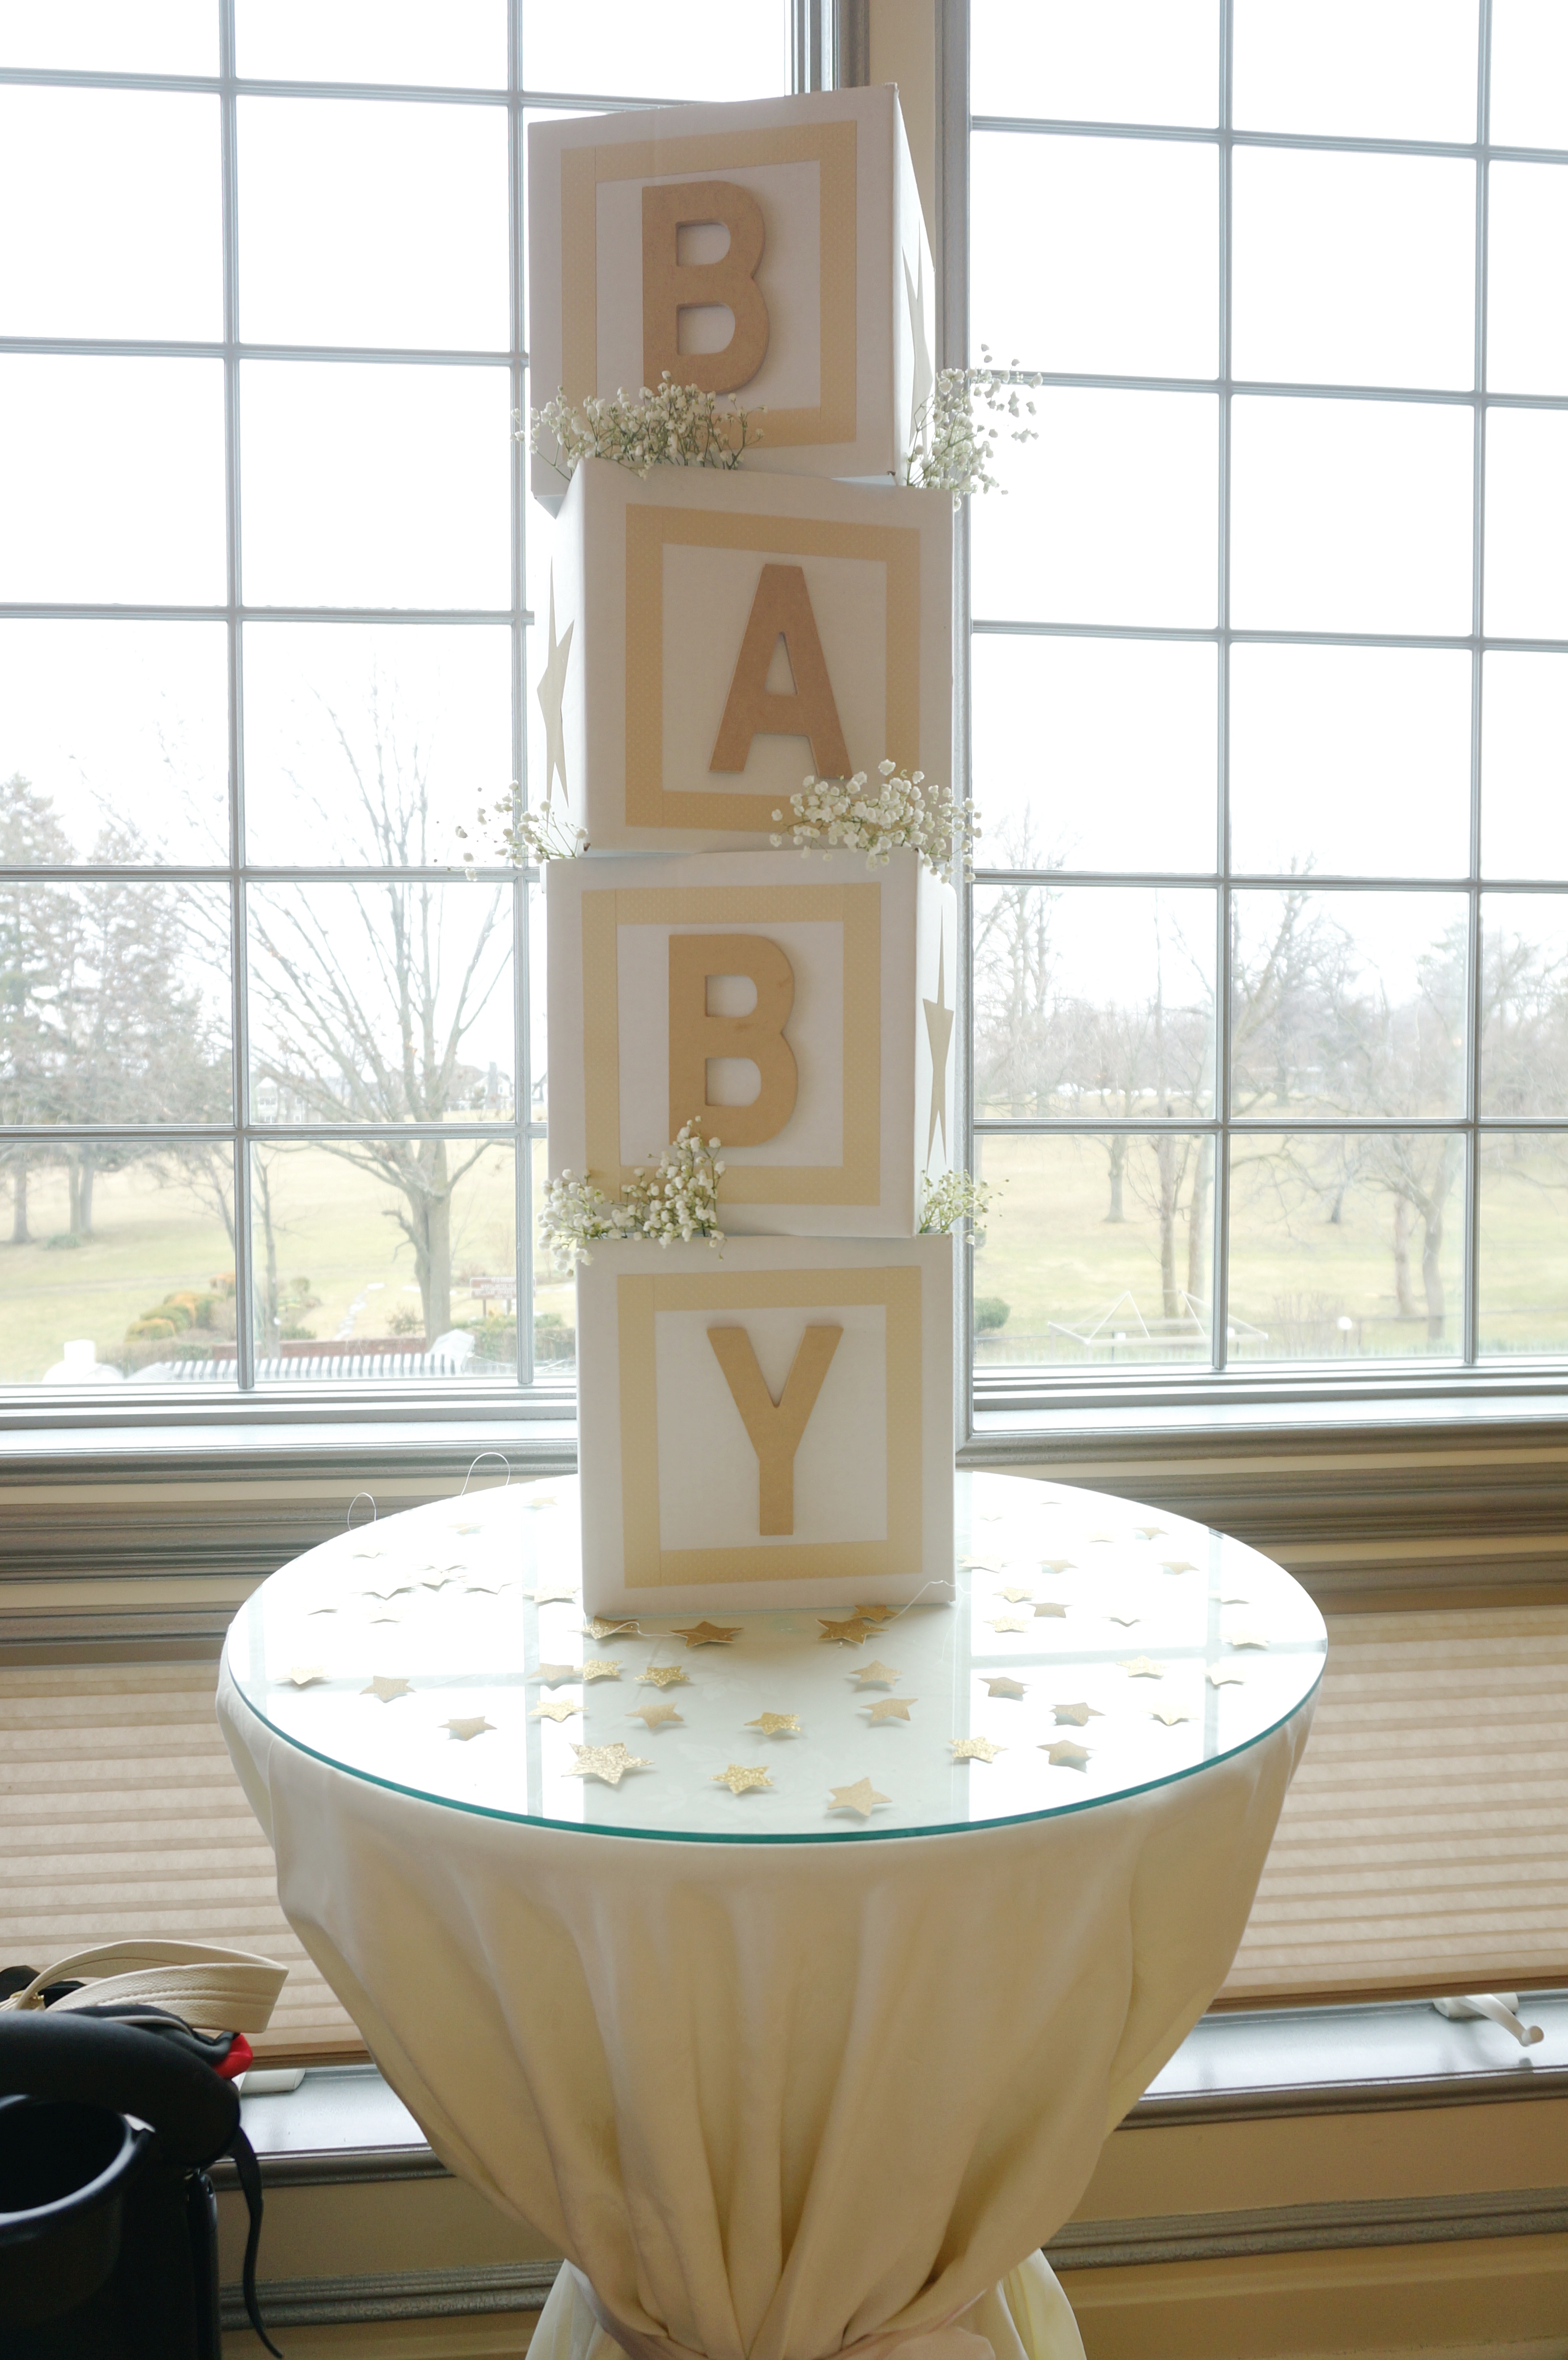 jumbo baby blocks for baby shower